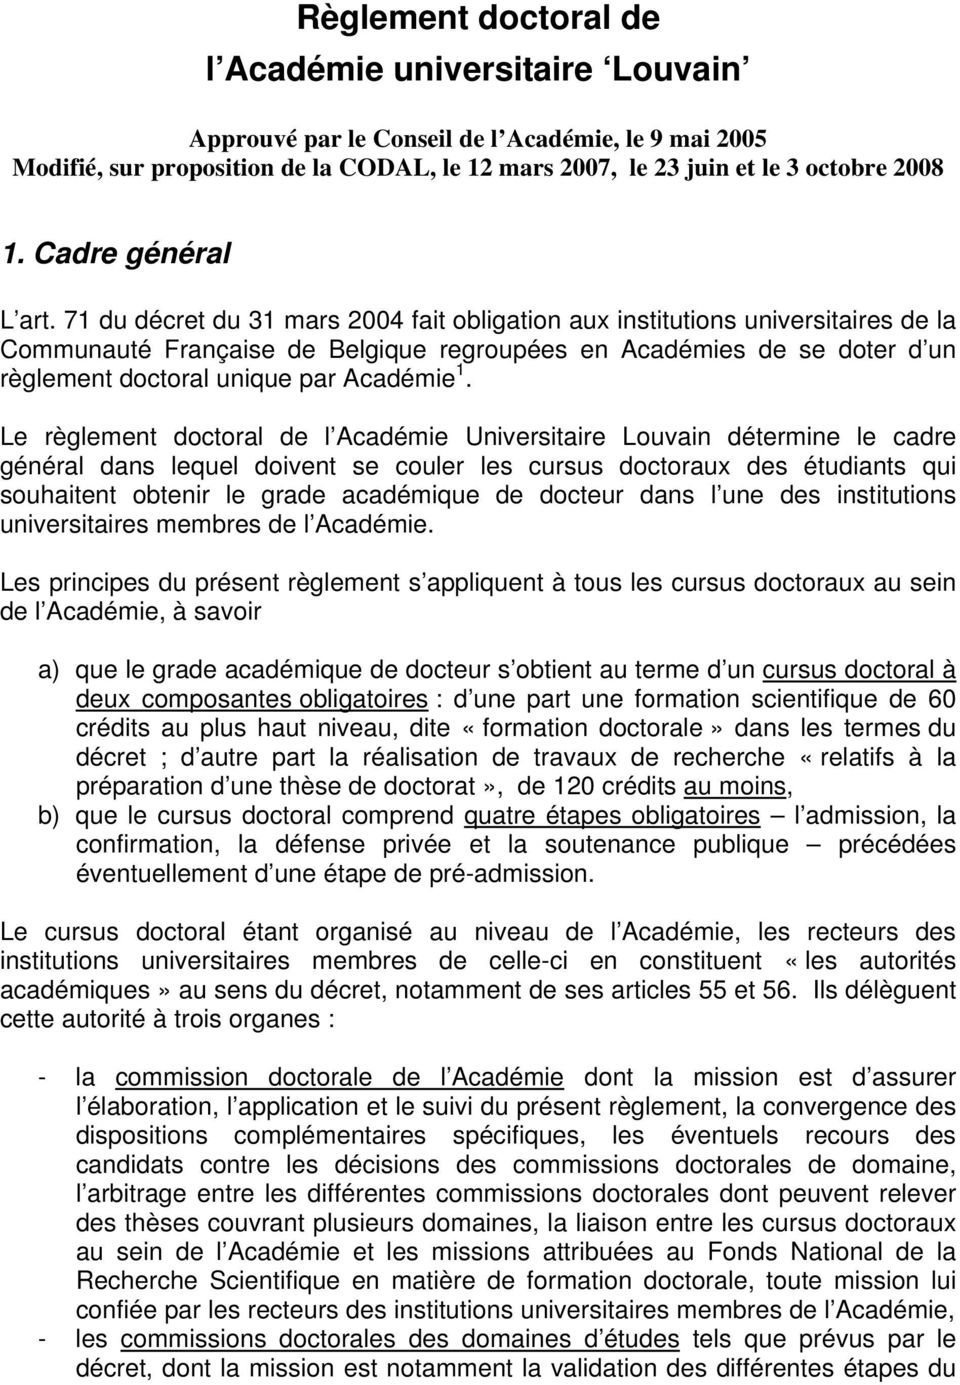 71 du décret du 31 mars 2004 fait obligation aux institutions universitaires de la Communauté Française de Belgique regroupées en Académies de se doter d un règlement doctoral unique par Académie 1.